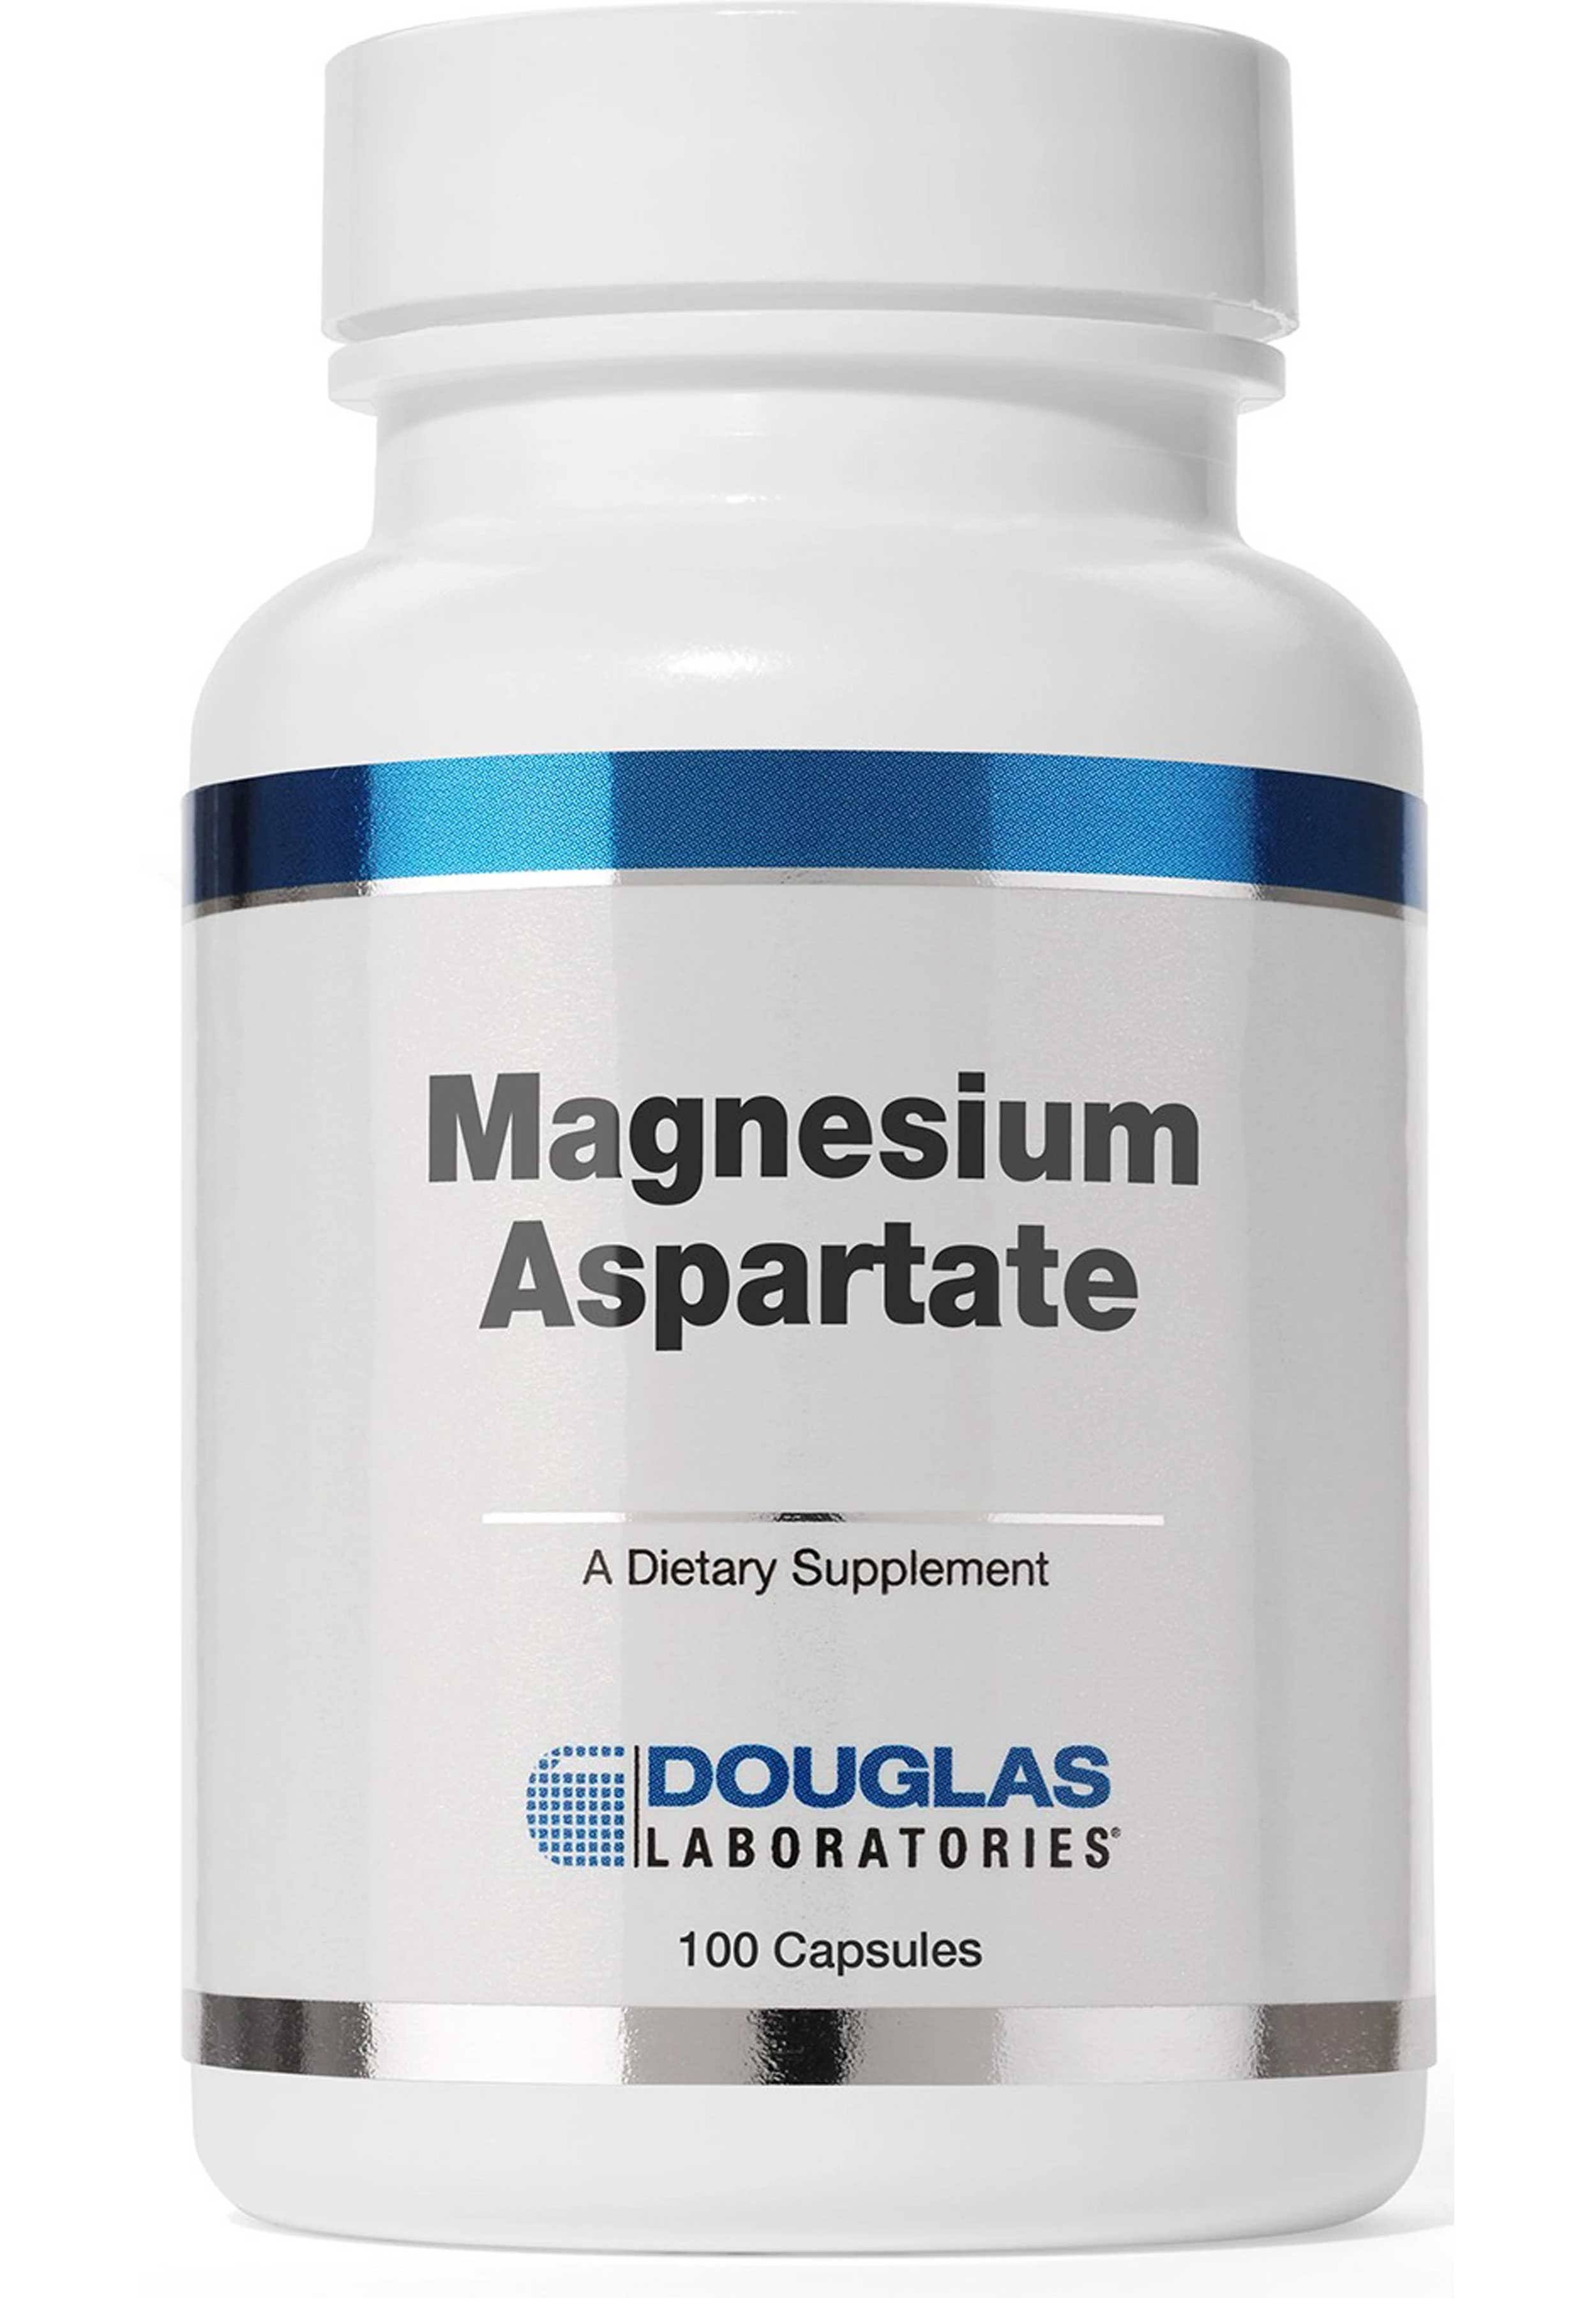 Douglas Laboratories Magnesium Aspartate - 100 Capsules